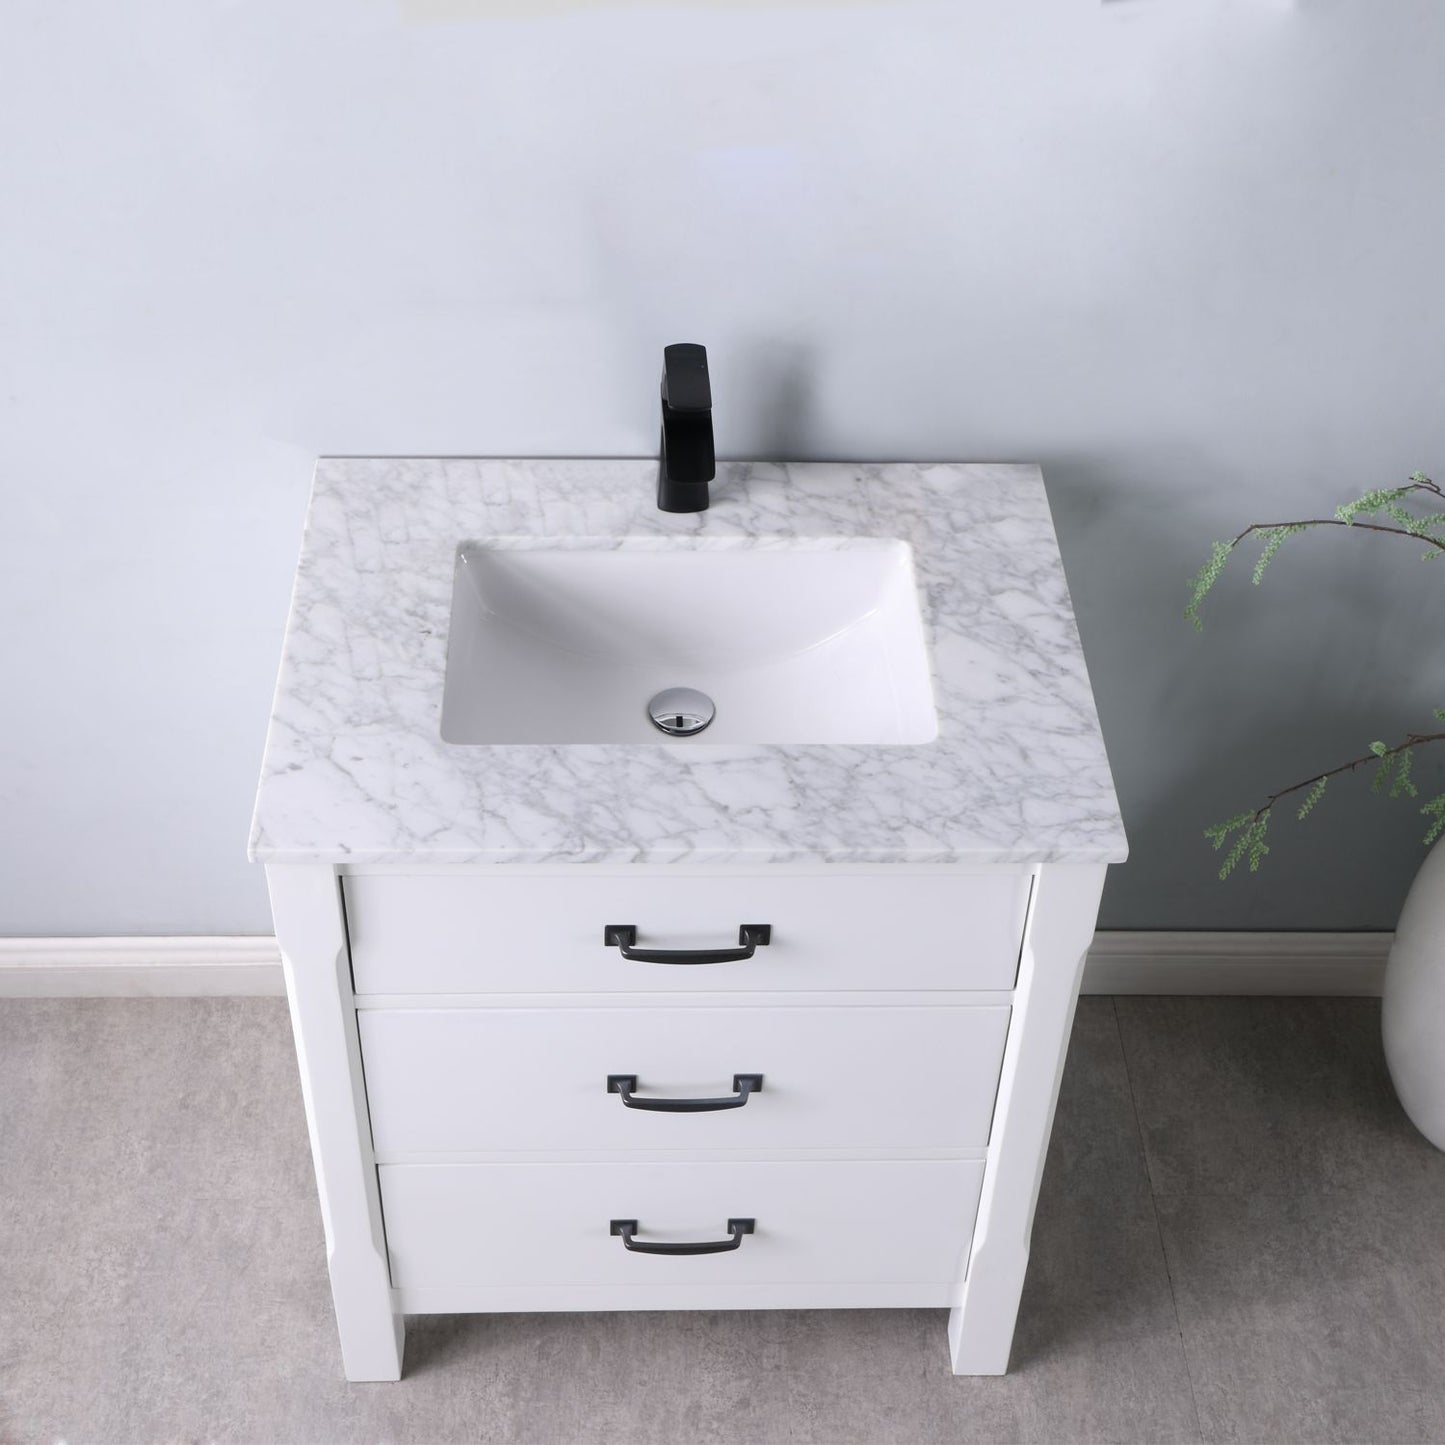 Altair Maribella 30" Single Bathroom Vanity Set Countertop without Mirror - Luxe Bathroom Vanities